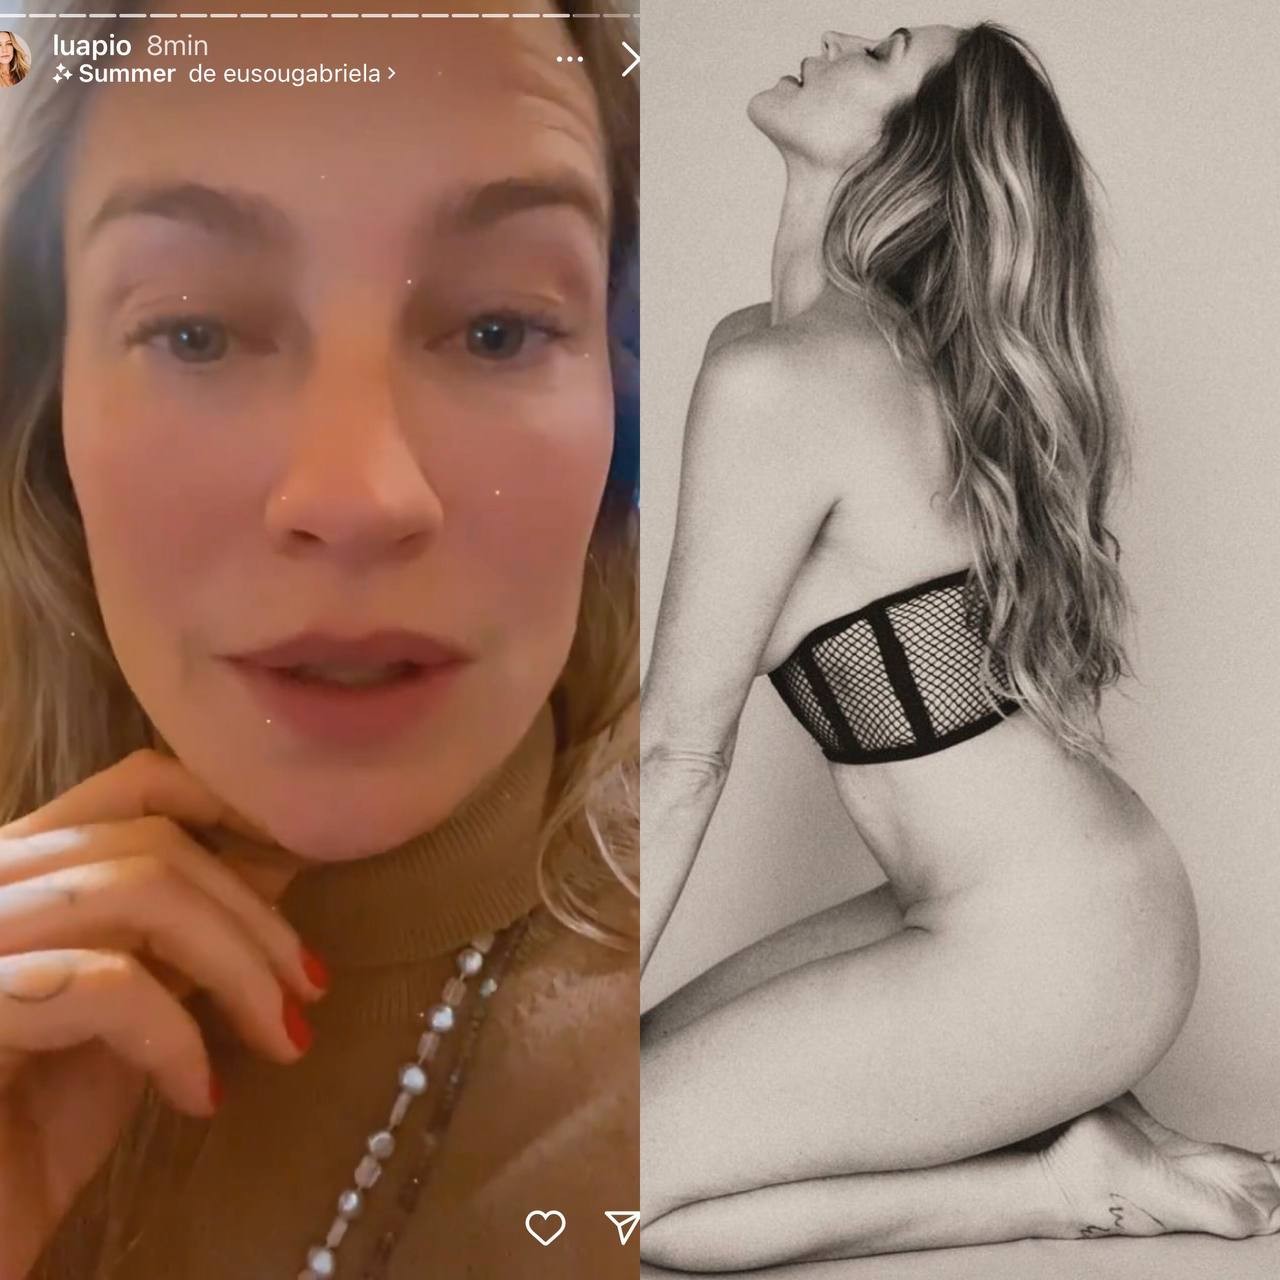 Luana Piovani fala sobre 'pé sujo' em foto sensual e dispara: 'É a minha cara' (Foto: Reprodução / Instagram)